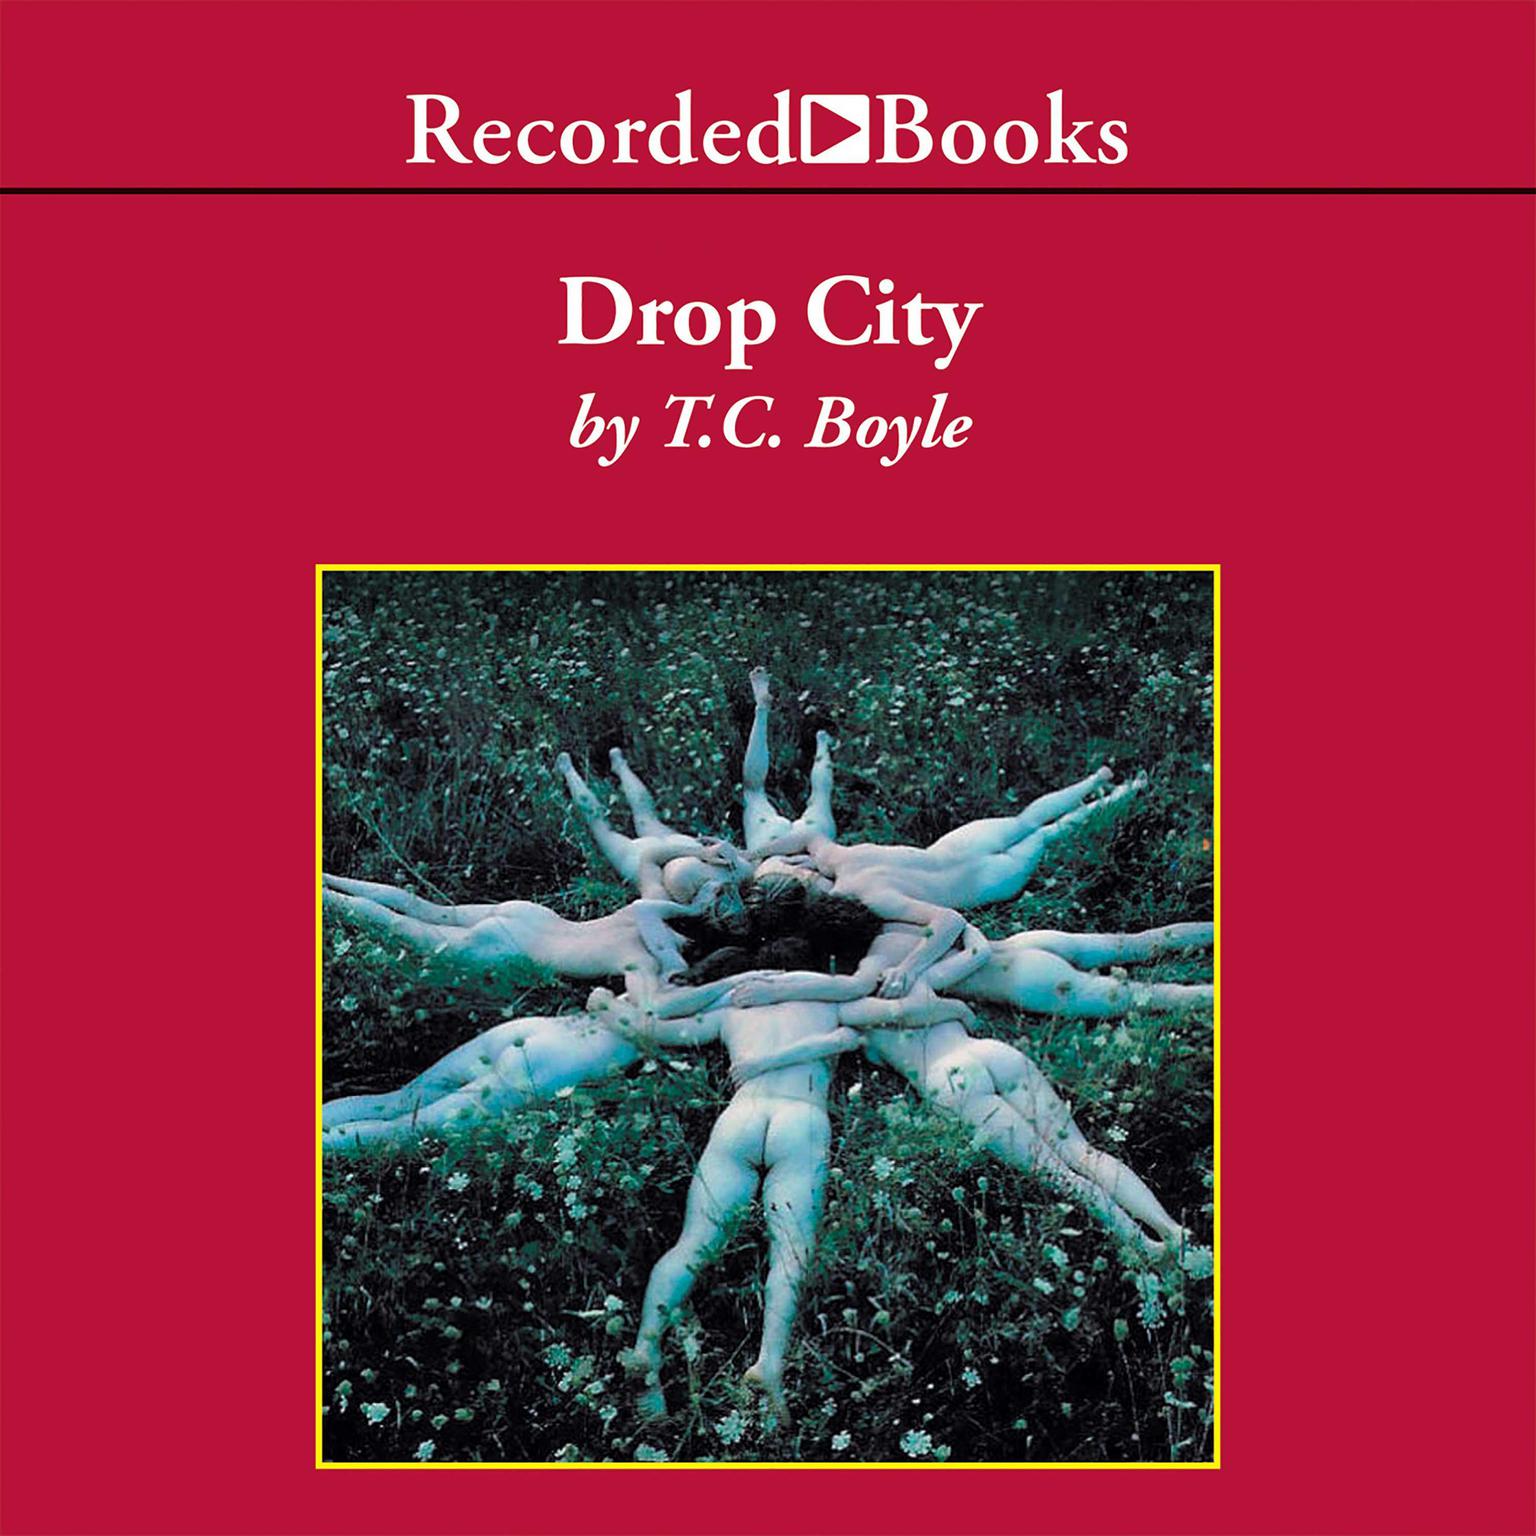 Drop City Audiobook, by T. C. Boyle